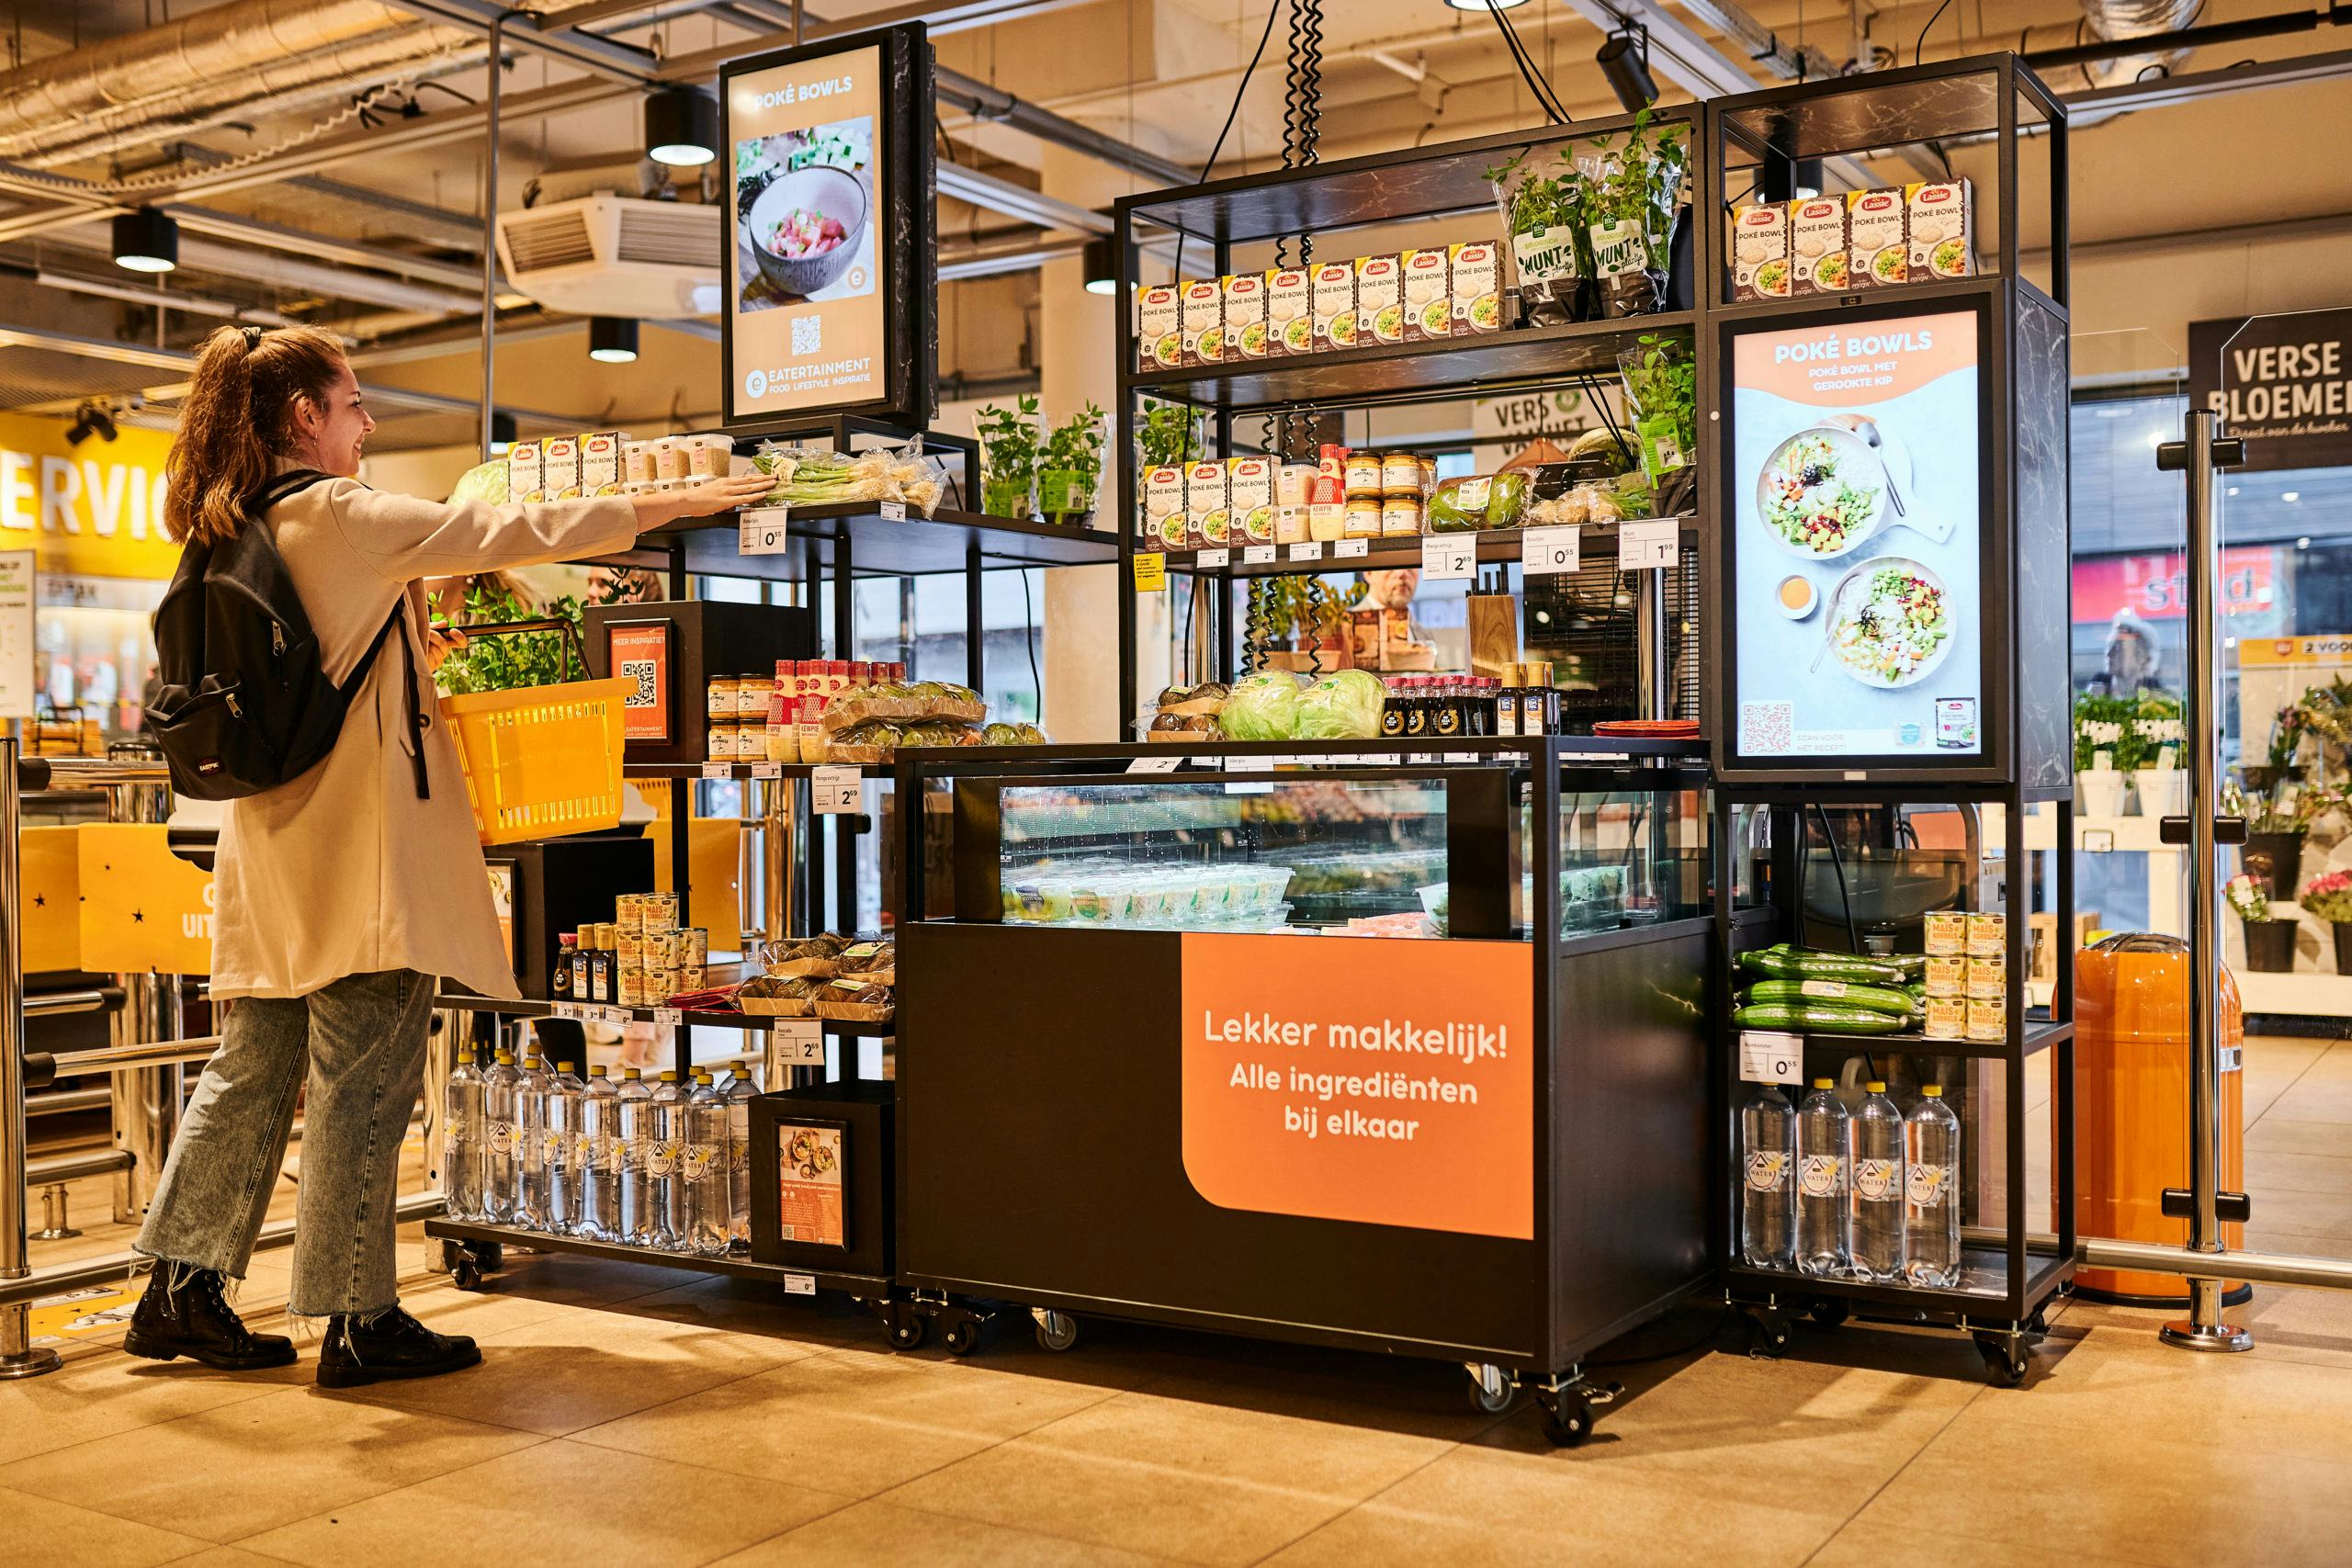 Het concept van Eatertainment in de praktijd bij Jumbo Maripaan in Groningen. Klanten kunnen van het meubel aan het begin van de winkel ingrediënten pakken om dan vervolgens met behulp van een online recept en video's hun eigen maaltijd bereiden. Foto Eatertainment. 